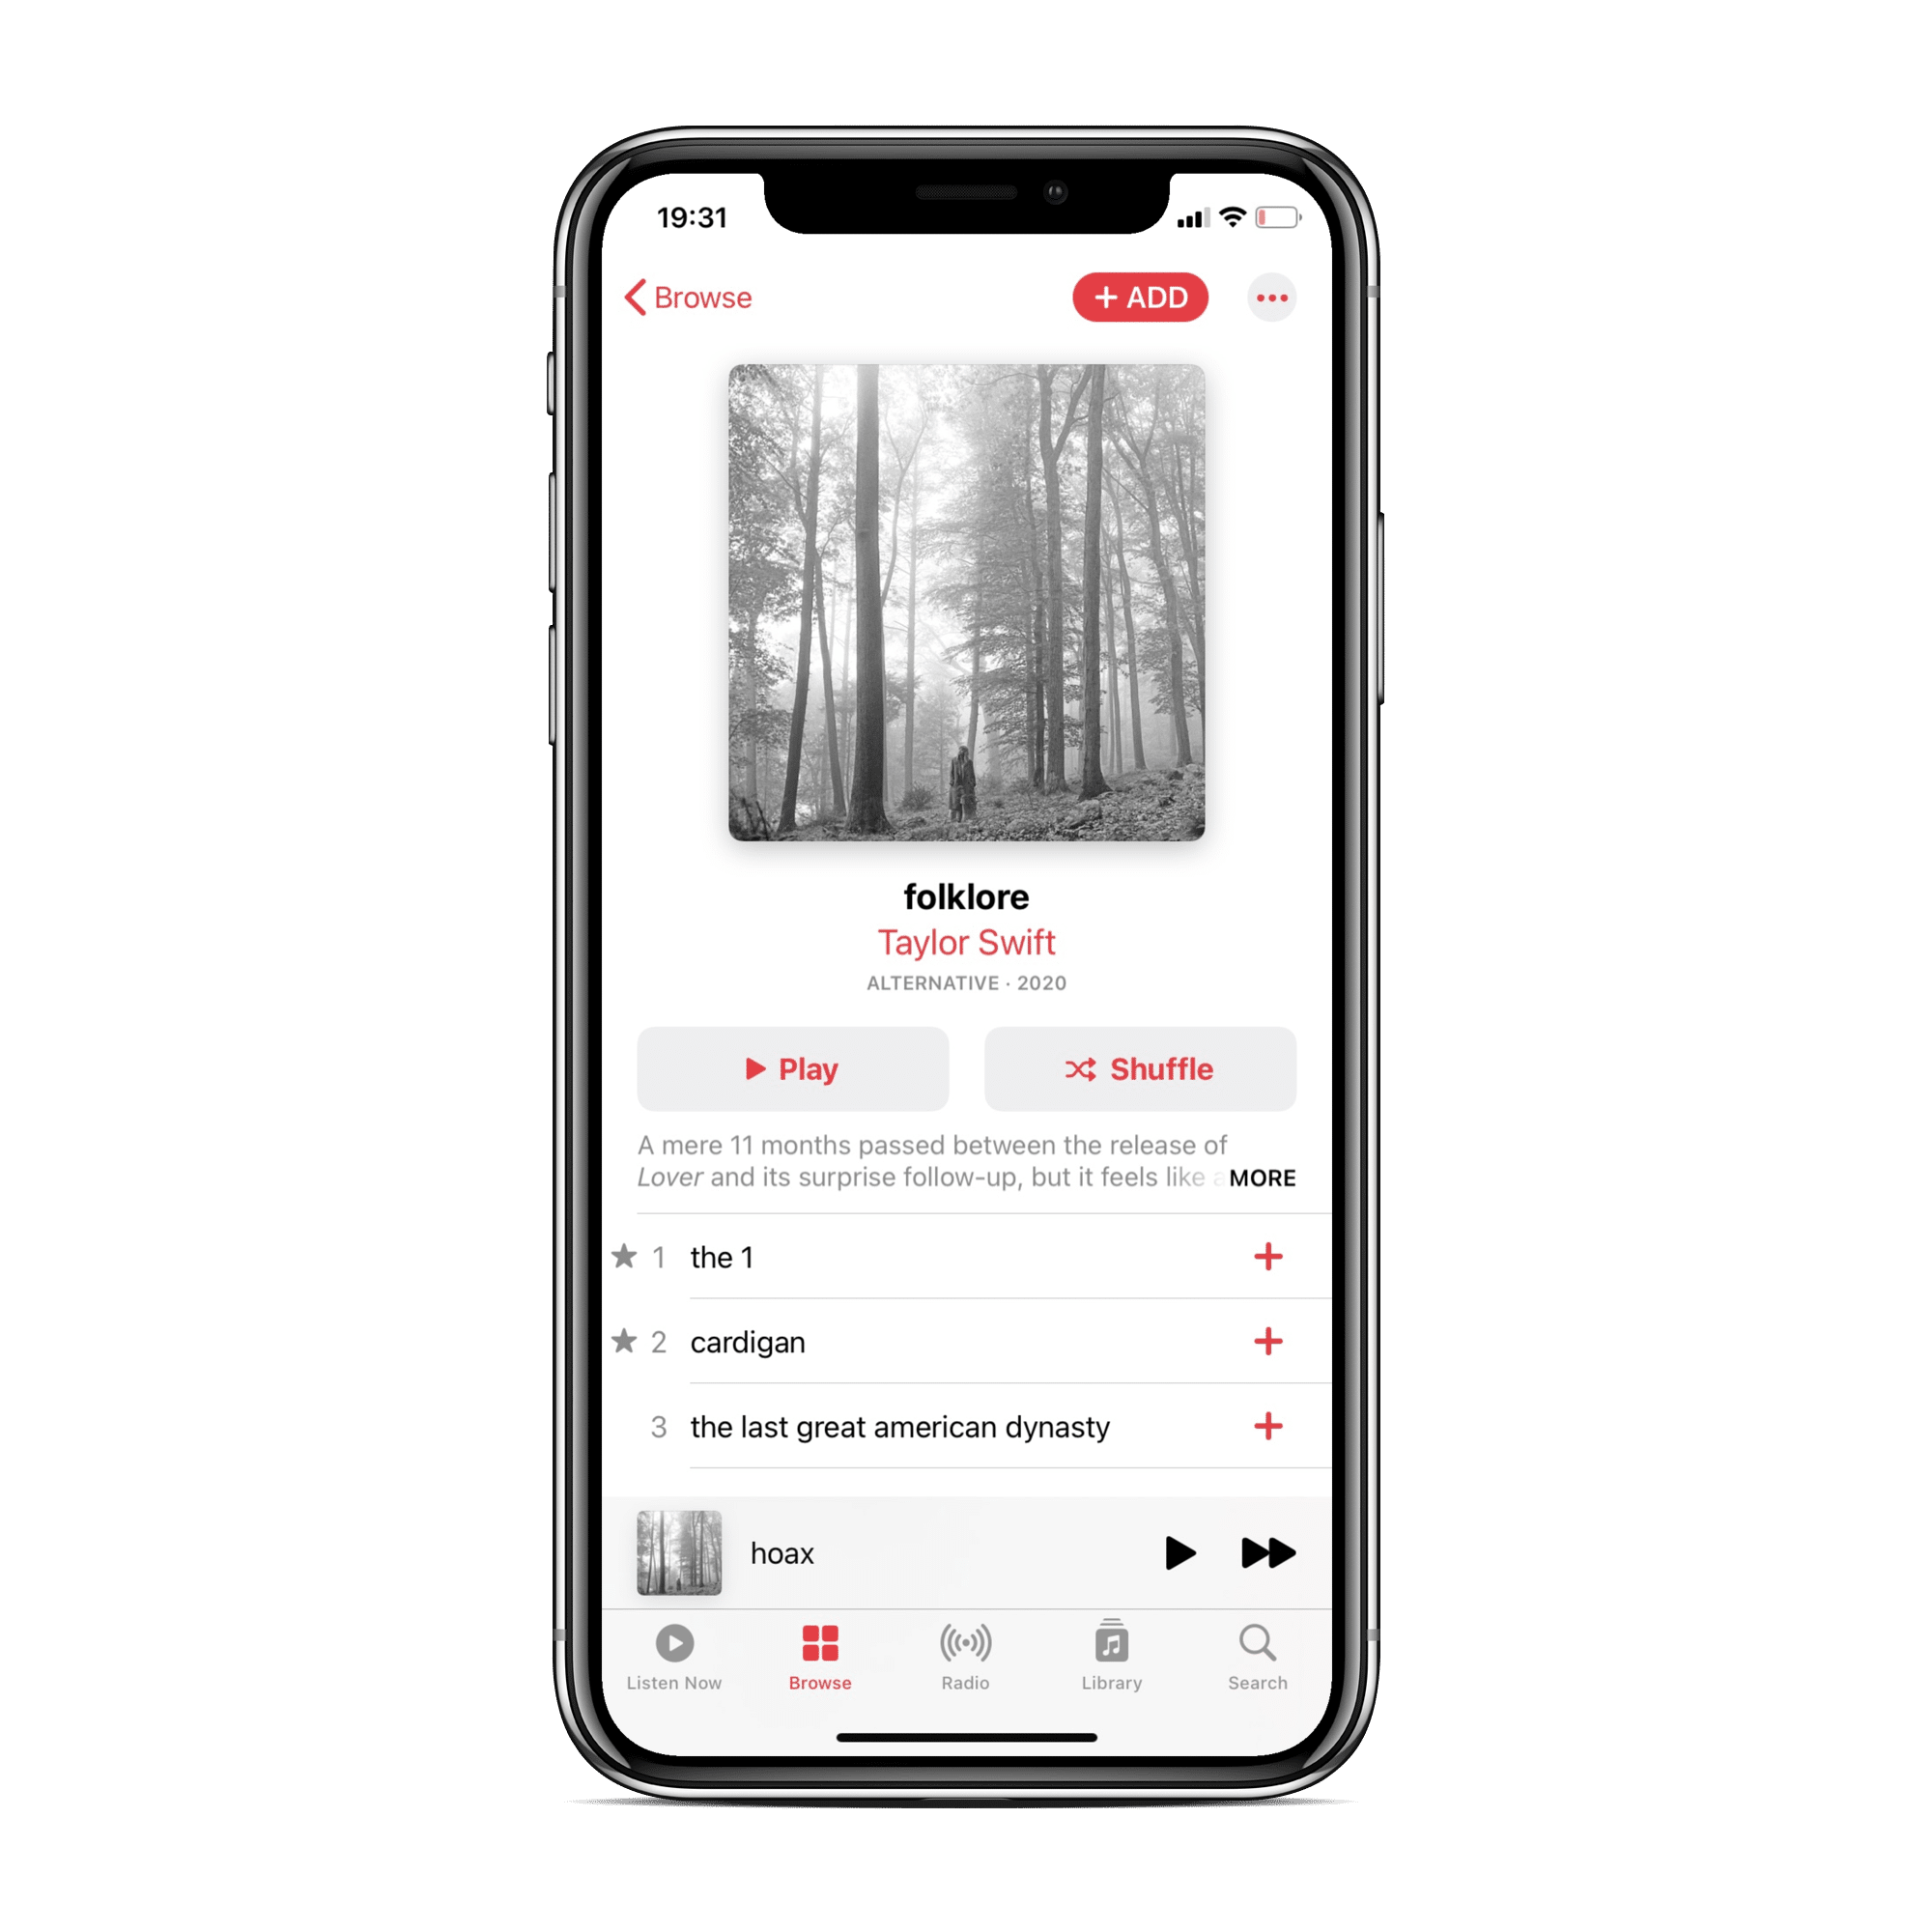 Album View in Apple Music iPhone iOS 14